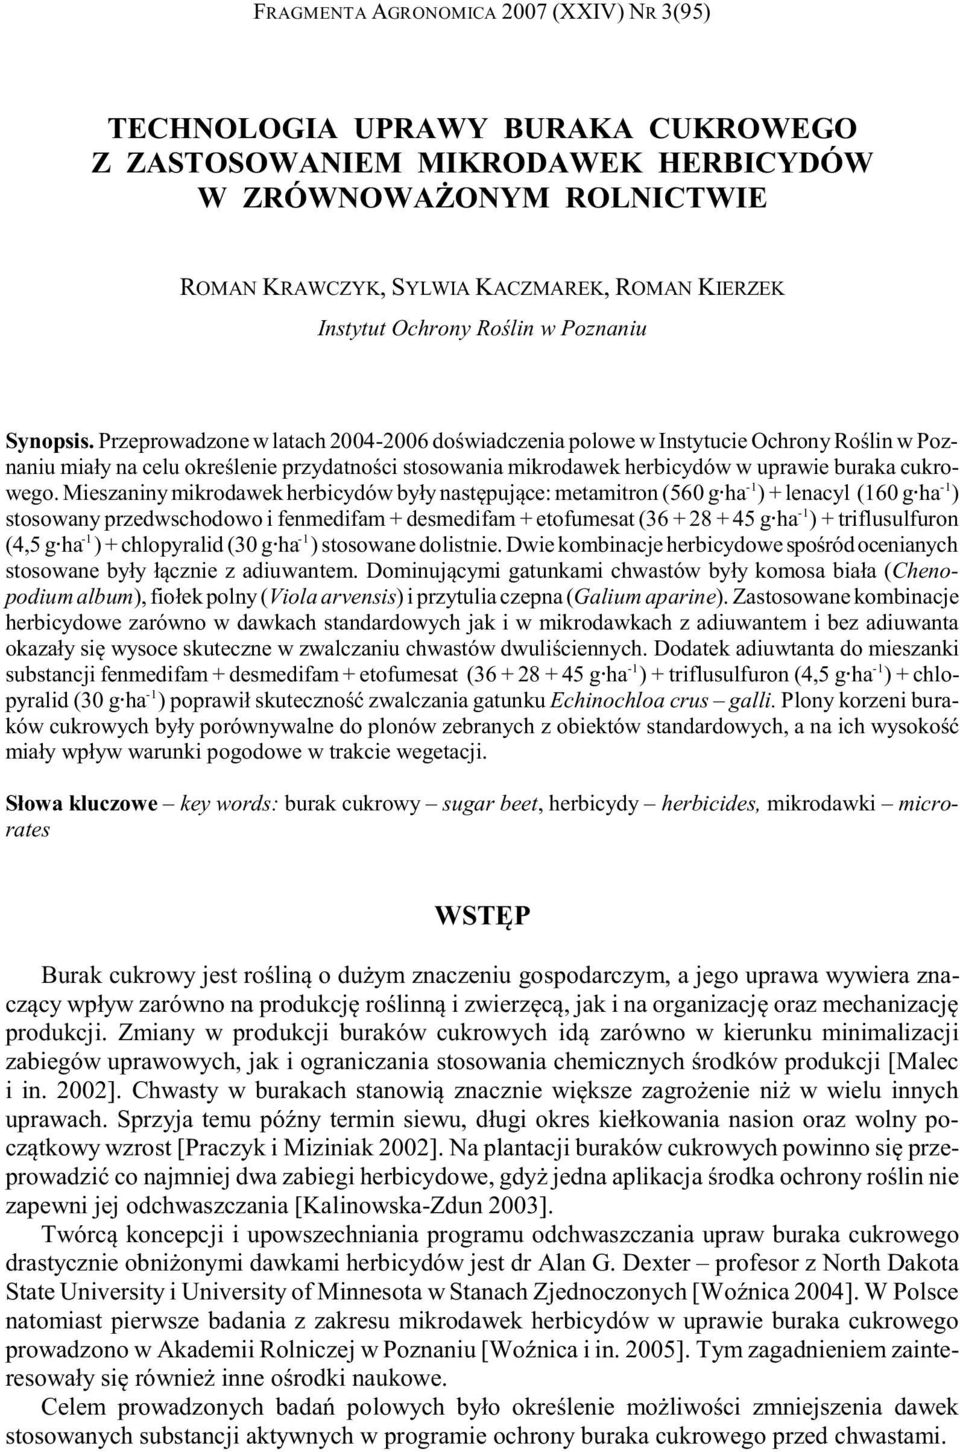 Przeprowadzone w latach 2004-2006 doœwiadczenia polowe w Instytucie Ochrony Roœlin w Poznaniu mia³y na celu okreœlenie przydatnoœci stosowania mikrodawek herbicydów w uprawie buraka cukrowego.